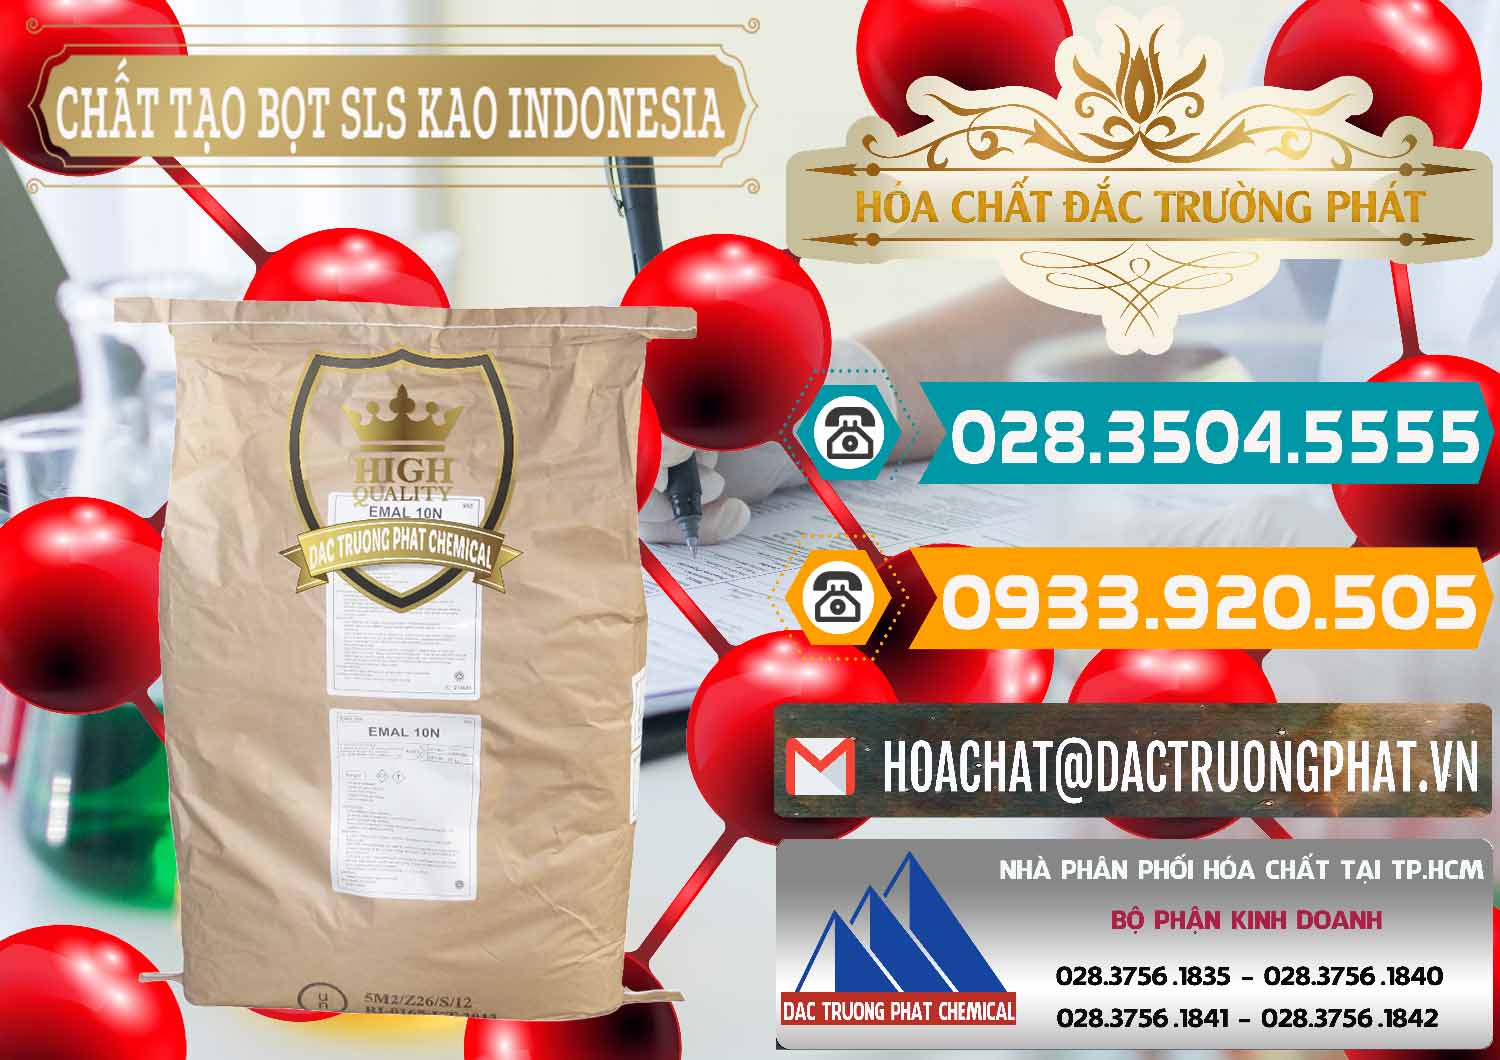 Công ty chuyên kinh doanh - bán Chất Tạo Bọt SLS - Sodium Lauryl Sulfate EMAL 10N KAO Indonesia - 0047 - Đơn vị cung cấp và kinh doanh hóa chất tại TP.HCM - congtyhoachat.vn